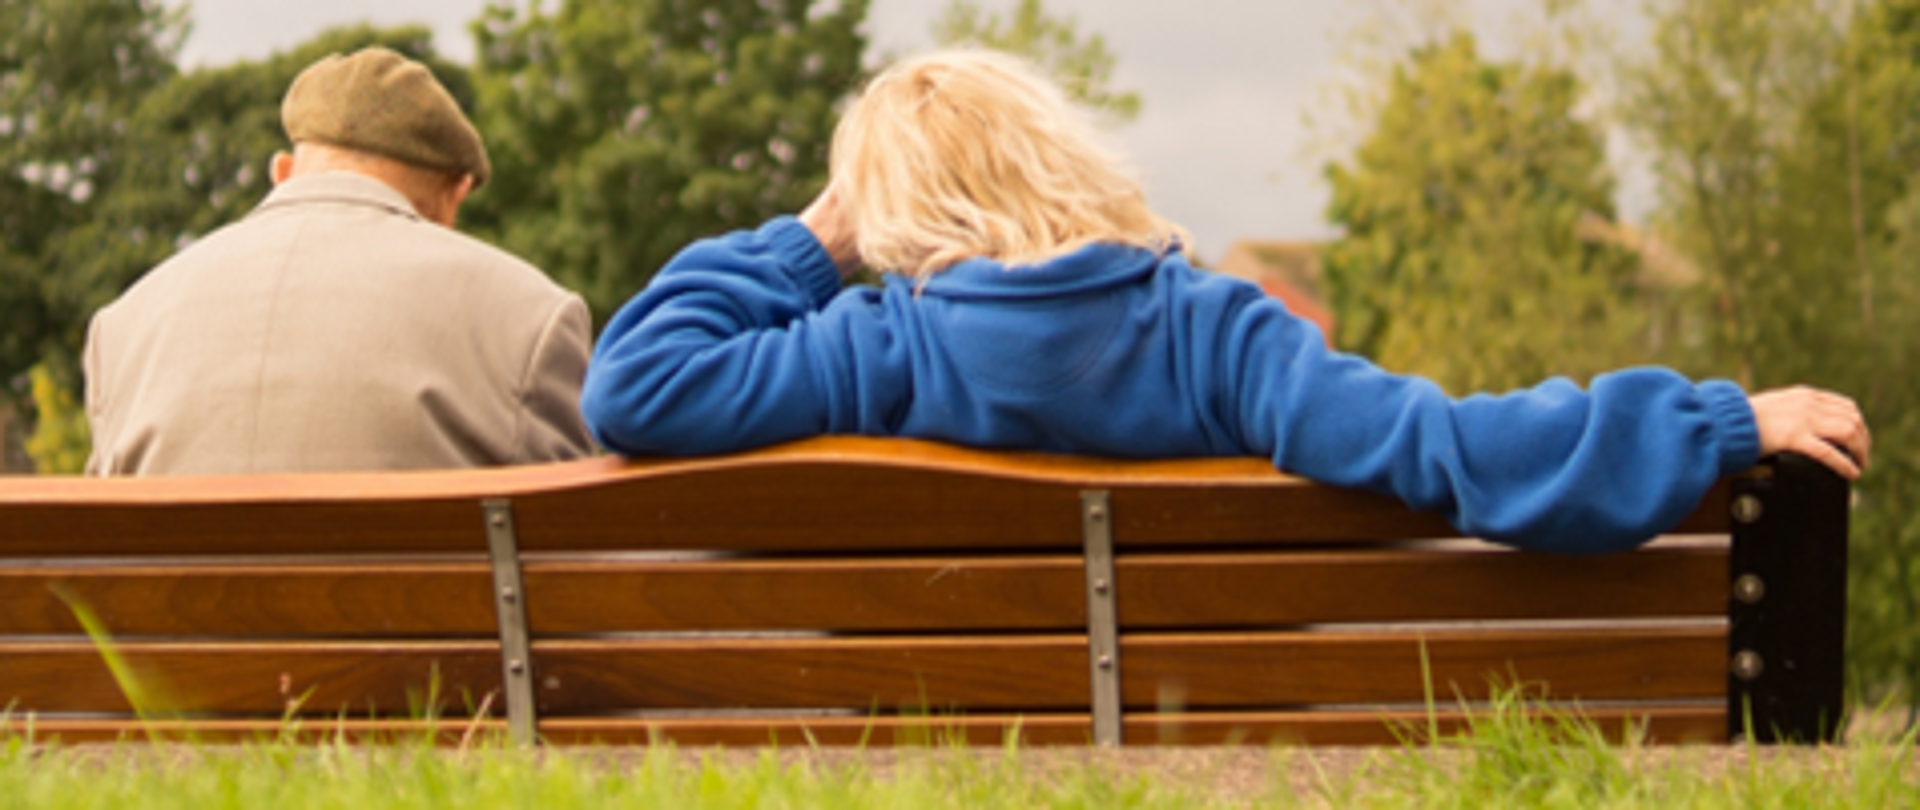 Na zdjęciu przedstawiona jest para seniorów siedząca tyłem na drewnianej ławce. Po lewej stronie siedzi mężczyzna w beżowym płaszczu i kaszkiecie w kolorze khaki. Po prawej stronie siedzi kobieta w długich blond włosach oraz ciemnoniebieskiej polarowej bluzie. W tle widać drzewa oraz zarośla co sugeruje, że para znajduje się w parku.